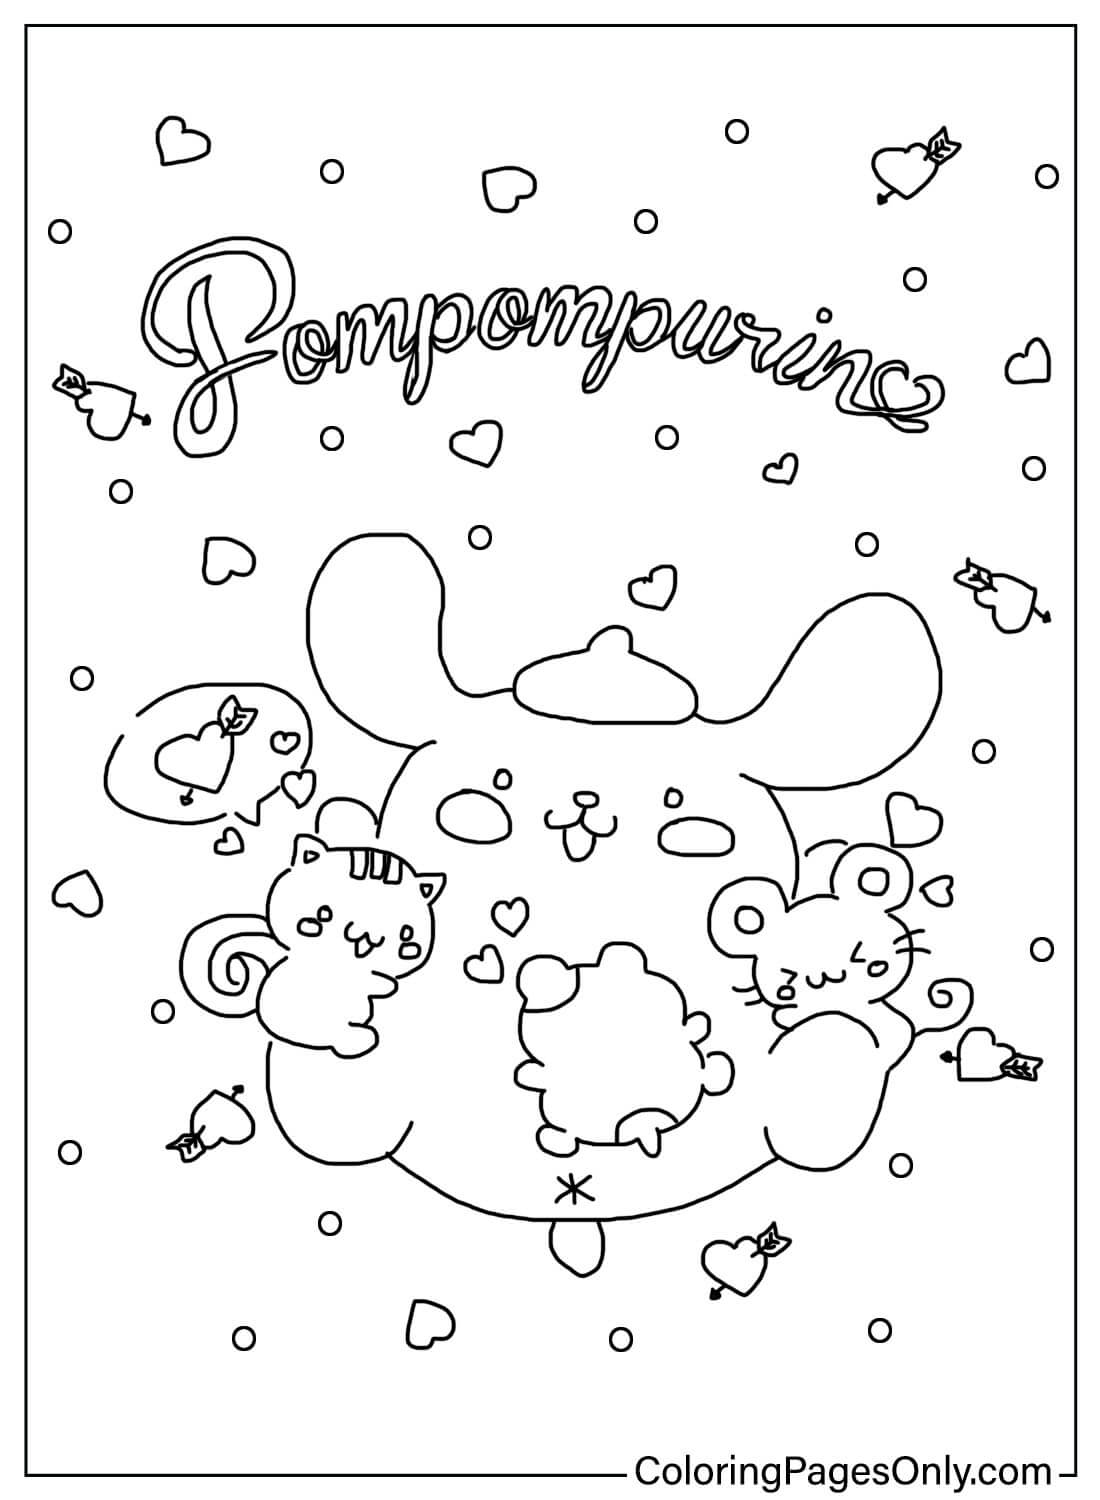 Página para colorear de Pompompurin gratis de Pompompurin